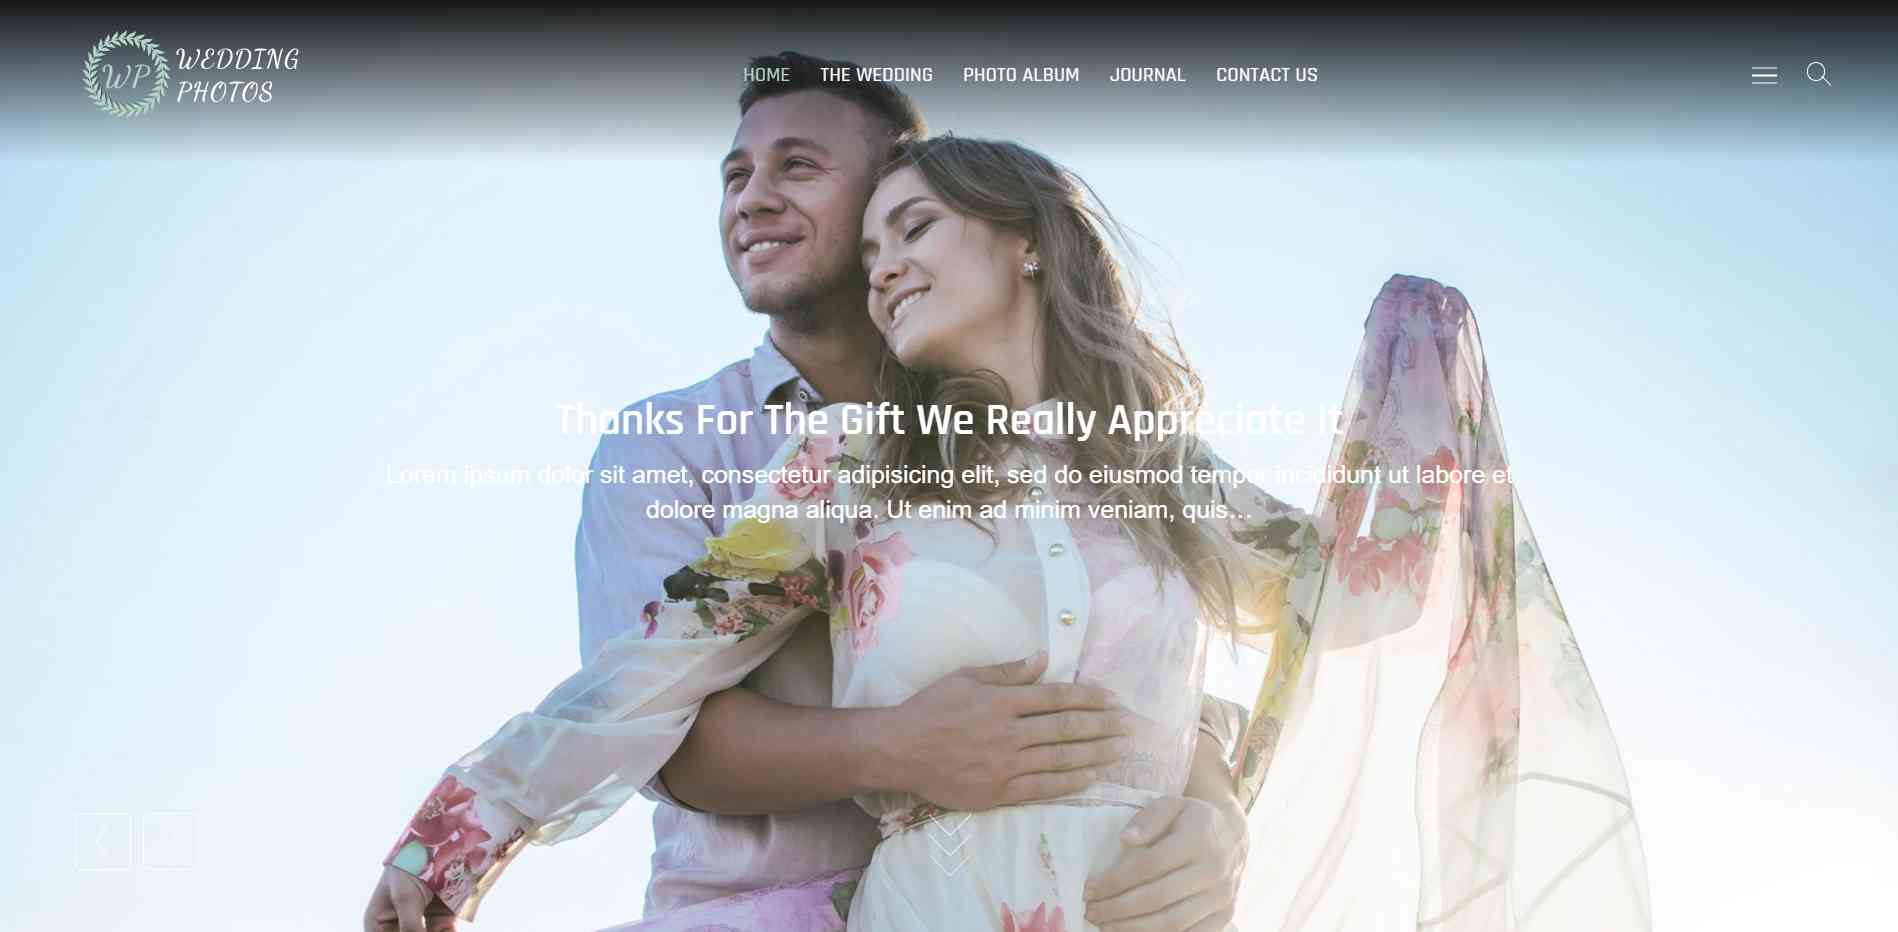 Wedding Photos - WordPress theme